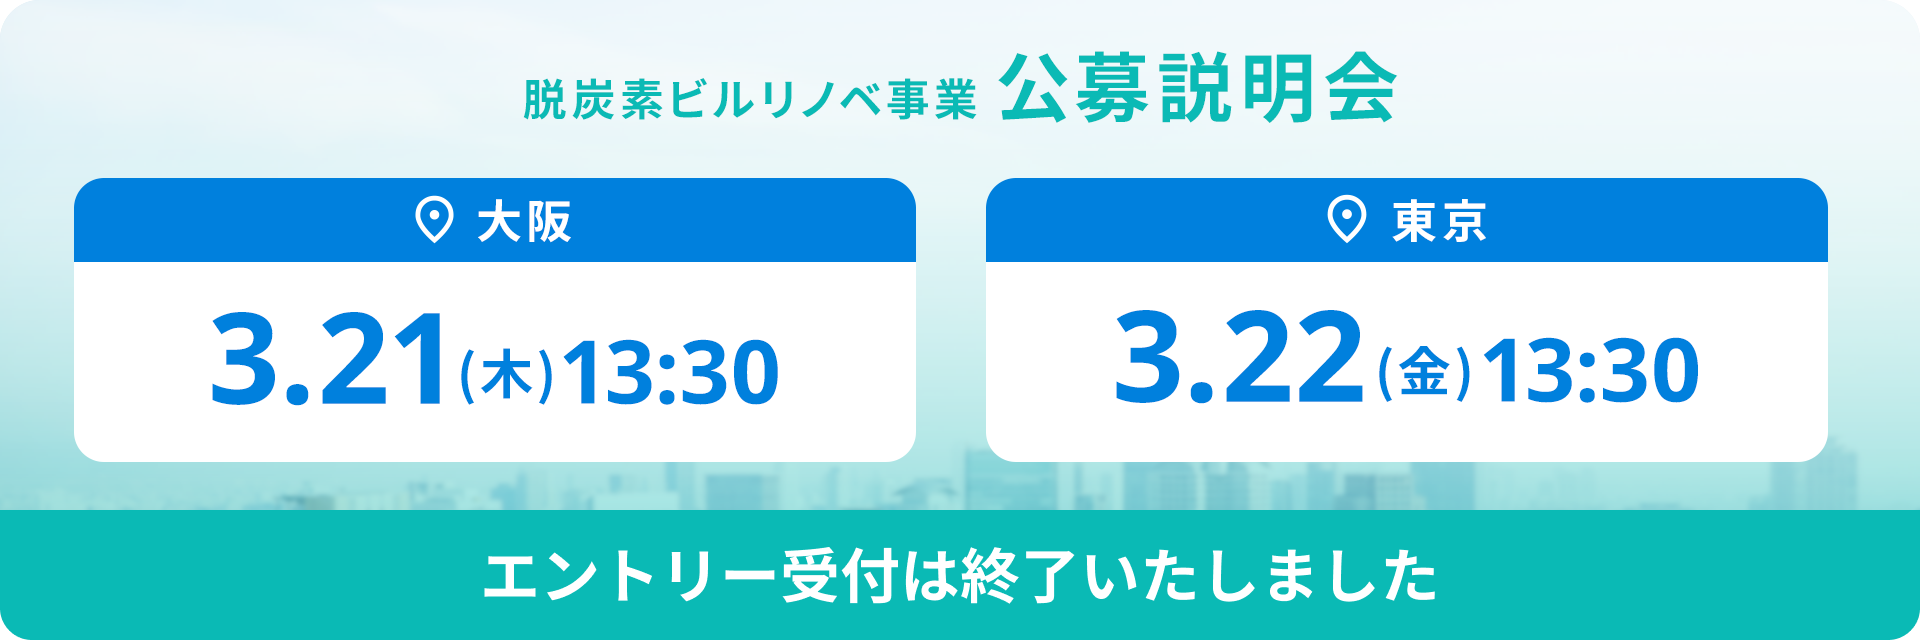 脱炭素ビルリノベ事業 公募説明会 大阪3.12（木）13:30 東京3.22（金）13:30 エントリー受付は終了しました